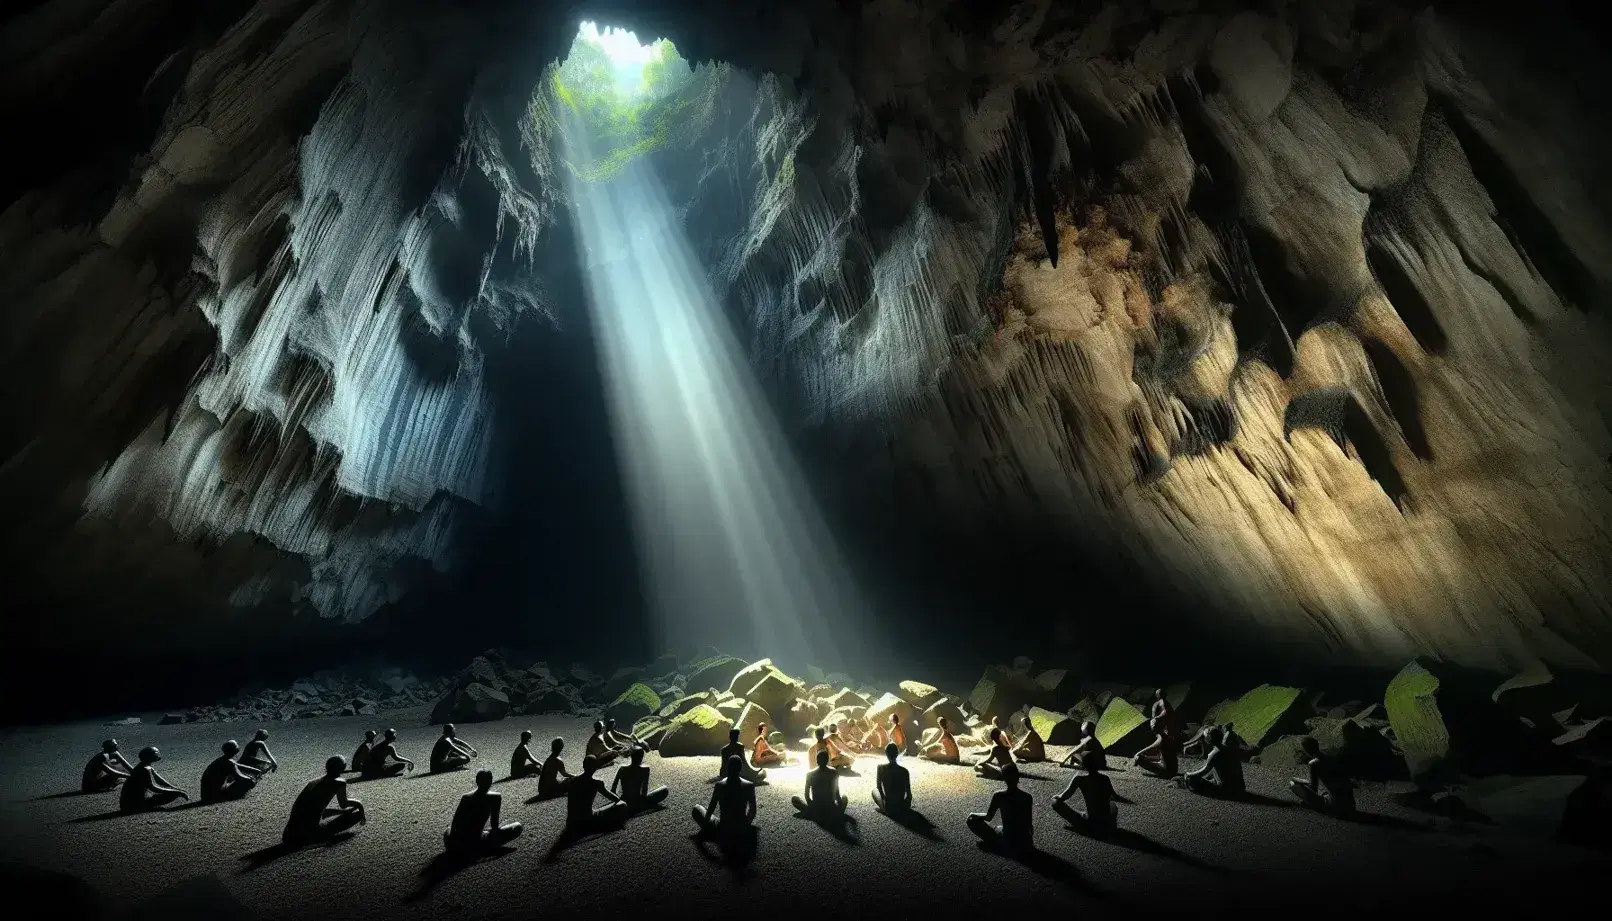 Cueva espaciosa con luz natural filtrándose por una abertura superior, iluminando figuras humanas sentadas y una de pie explorando.